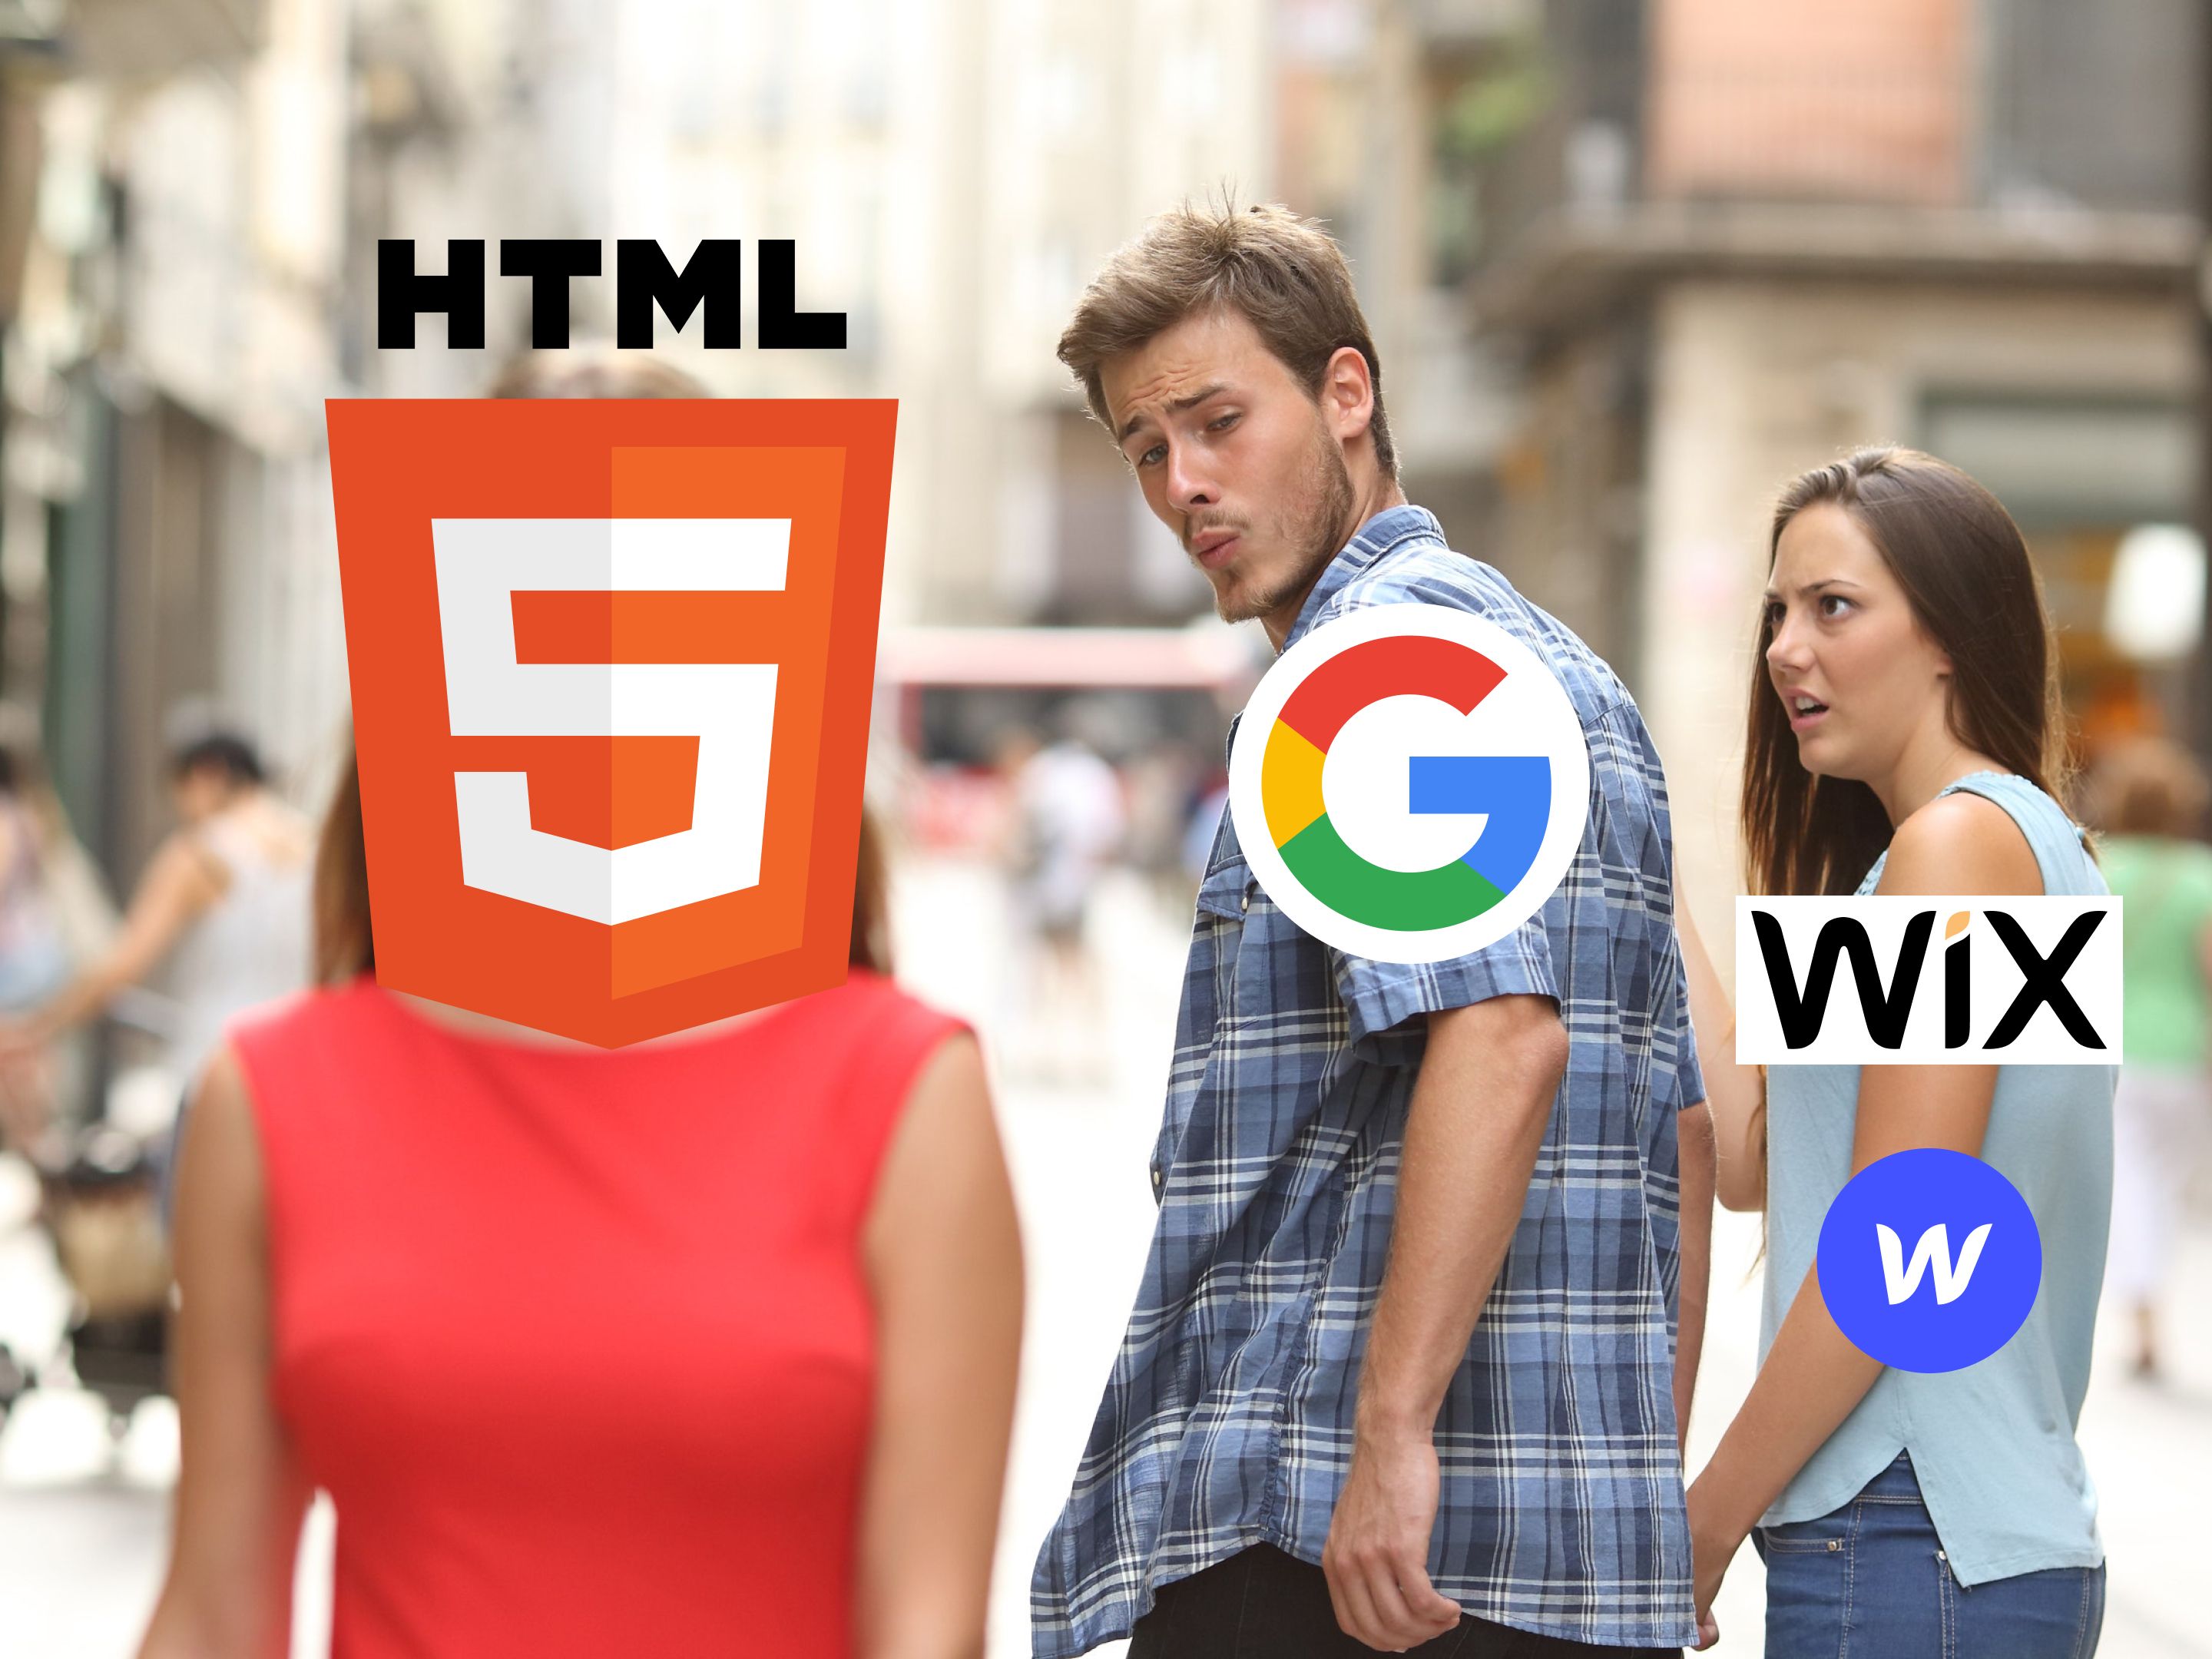 Meme-Bild mit drei Personen. Eine Person im Vordergrund ist durch das Logo von HTML5 ersetzt, während die zweite Person, die sich gespannt umdreht, durch das Google-Logo ersetzt wird und eine dritte, schockierte und eifersüchtige Person im Hintergrund durch das Wix-Logo.